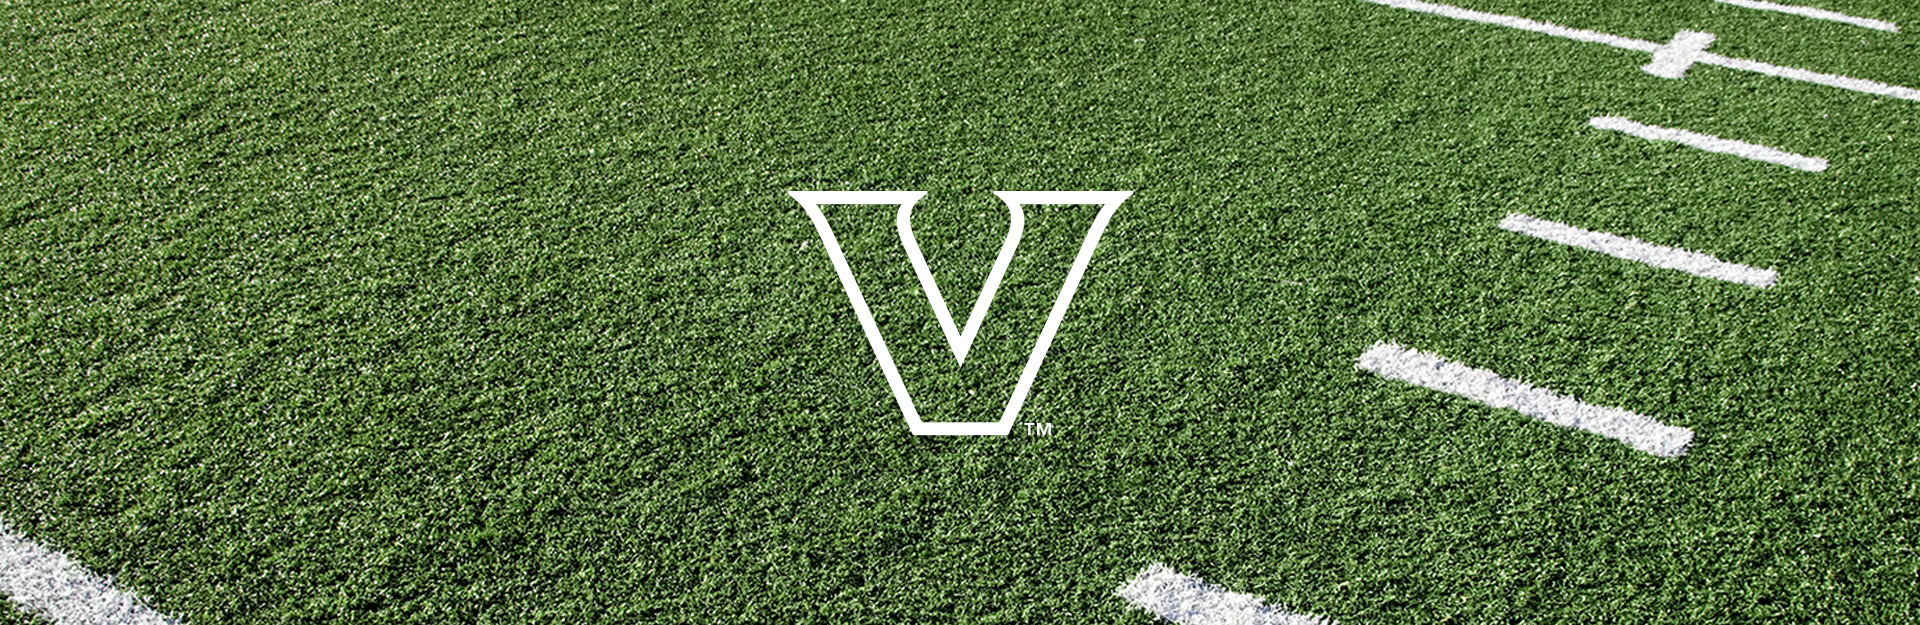 Vanderbilt logo on football field